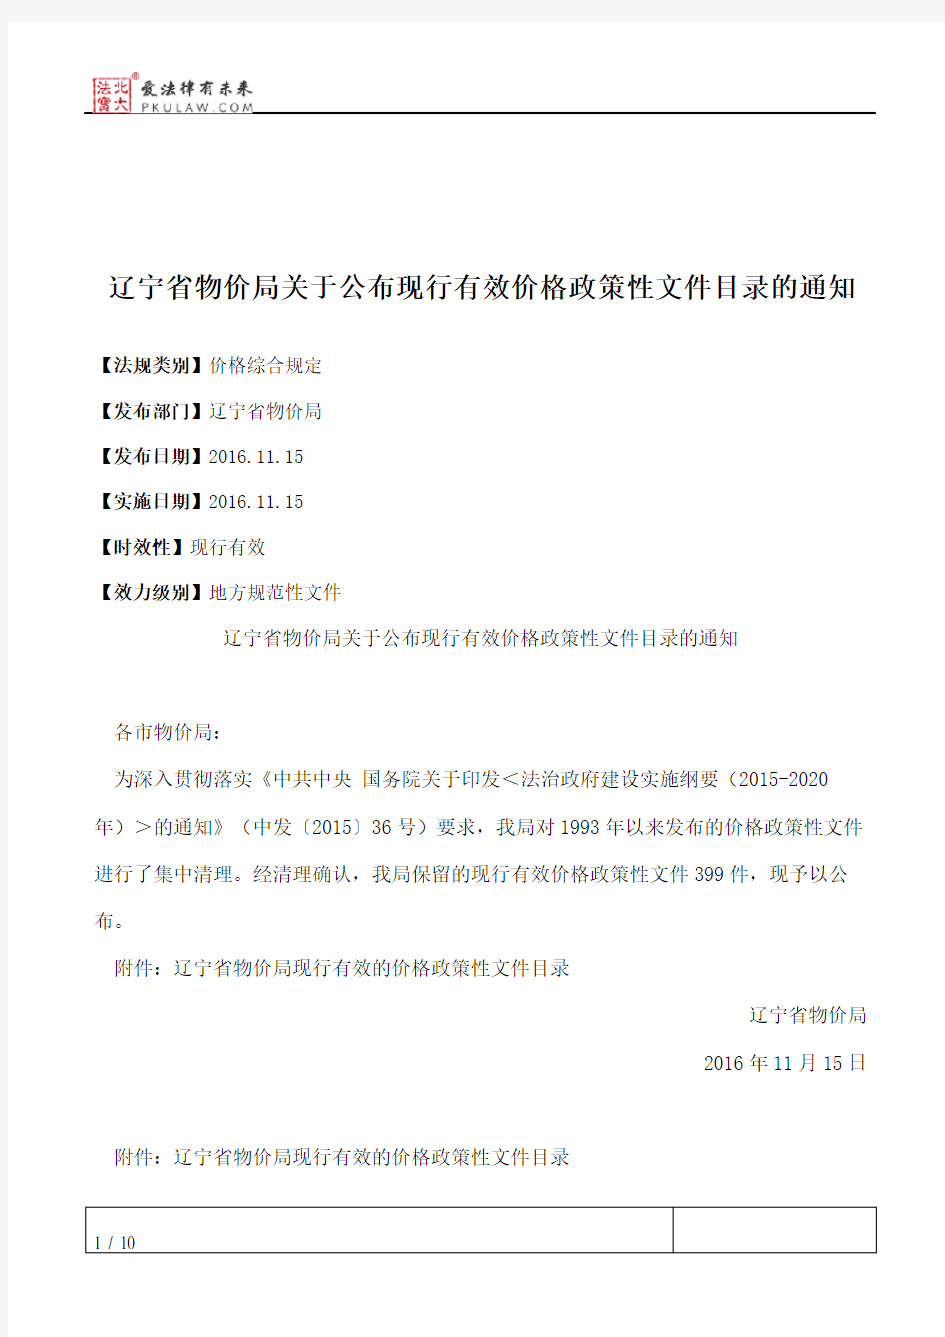 辽宁省物价局关于公布现行有效价格政策性文件目录的通知